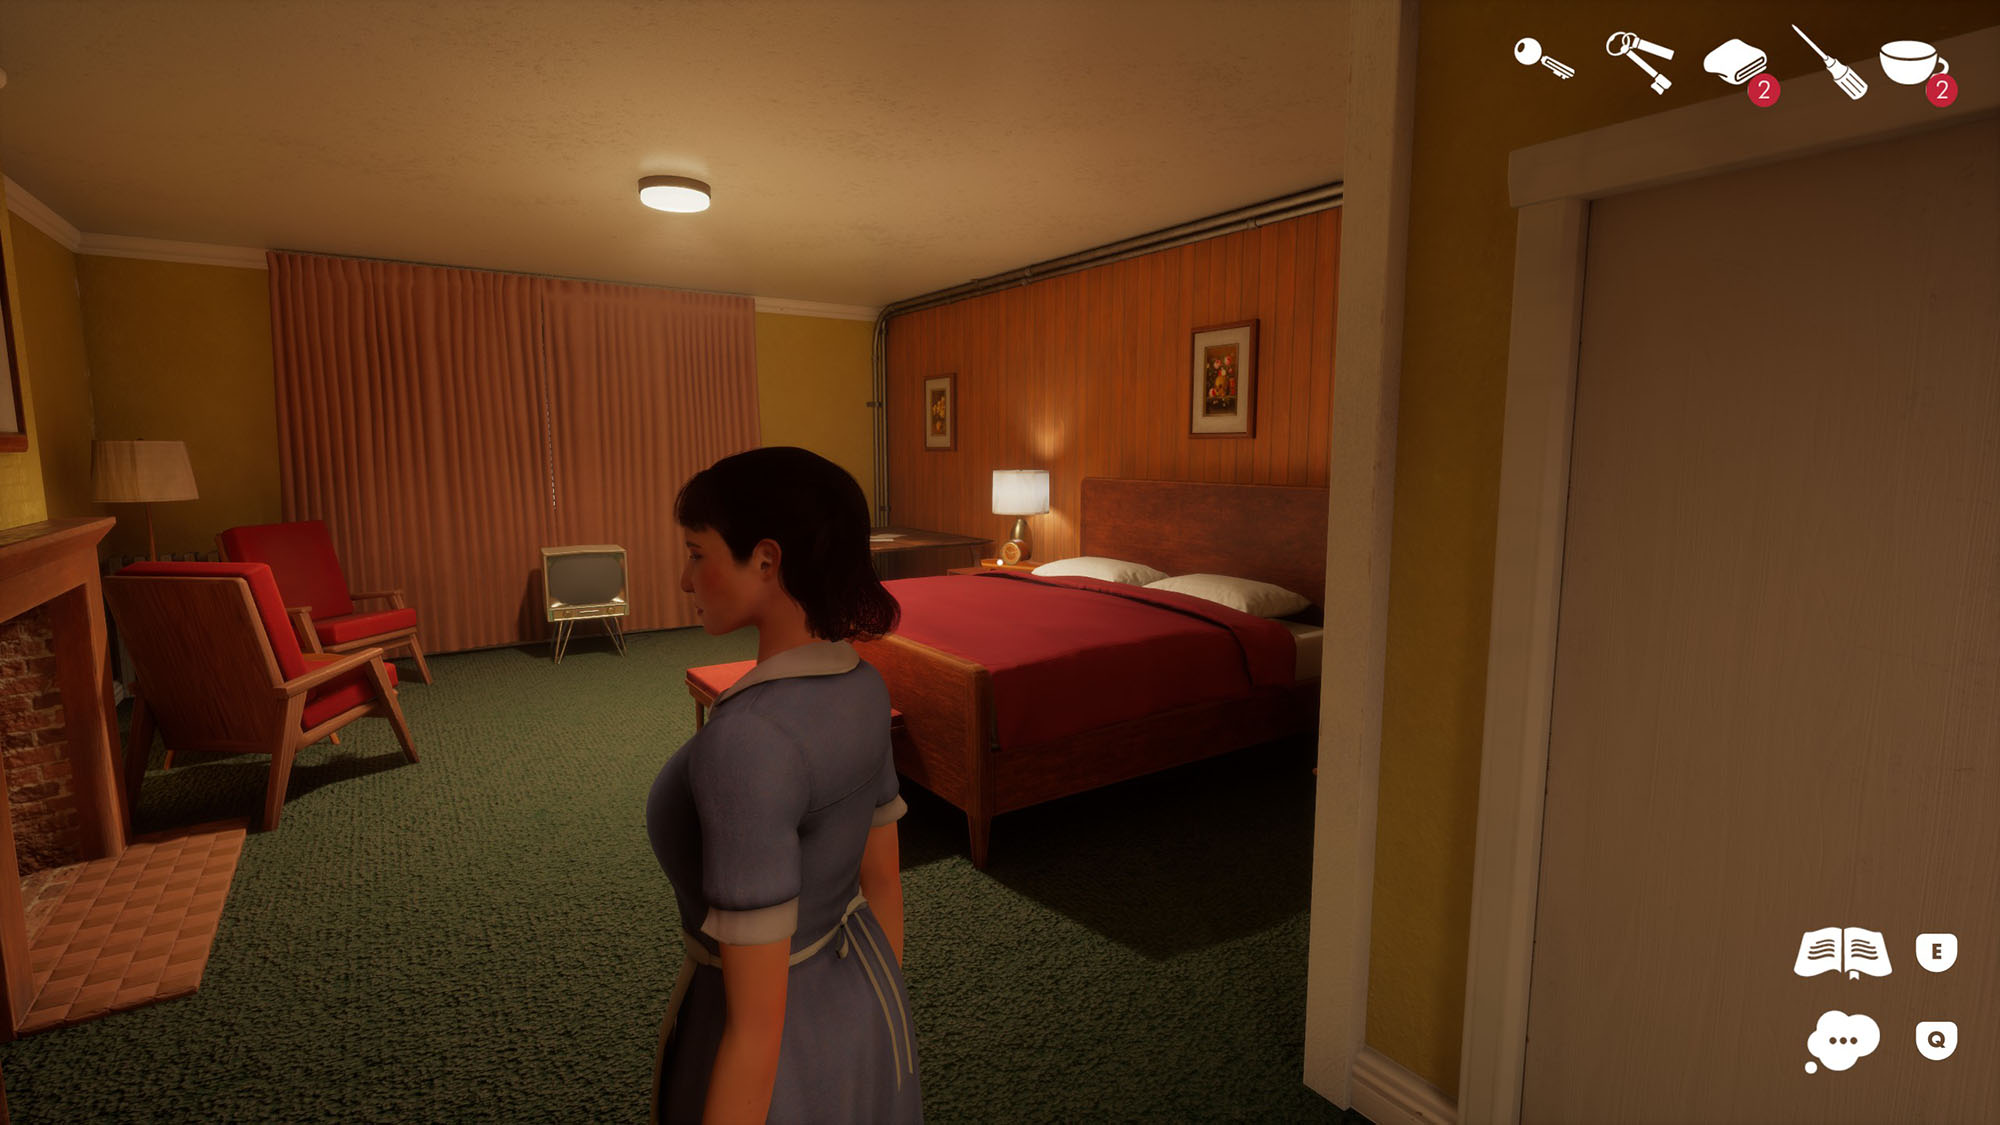 Der Screenshot aus dem Spiel This Bed We Made zeigt ein Zimmer des Hotels, in dem es spielt.